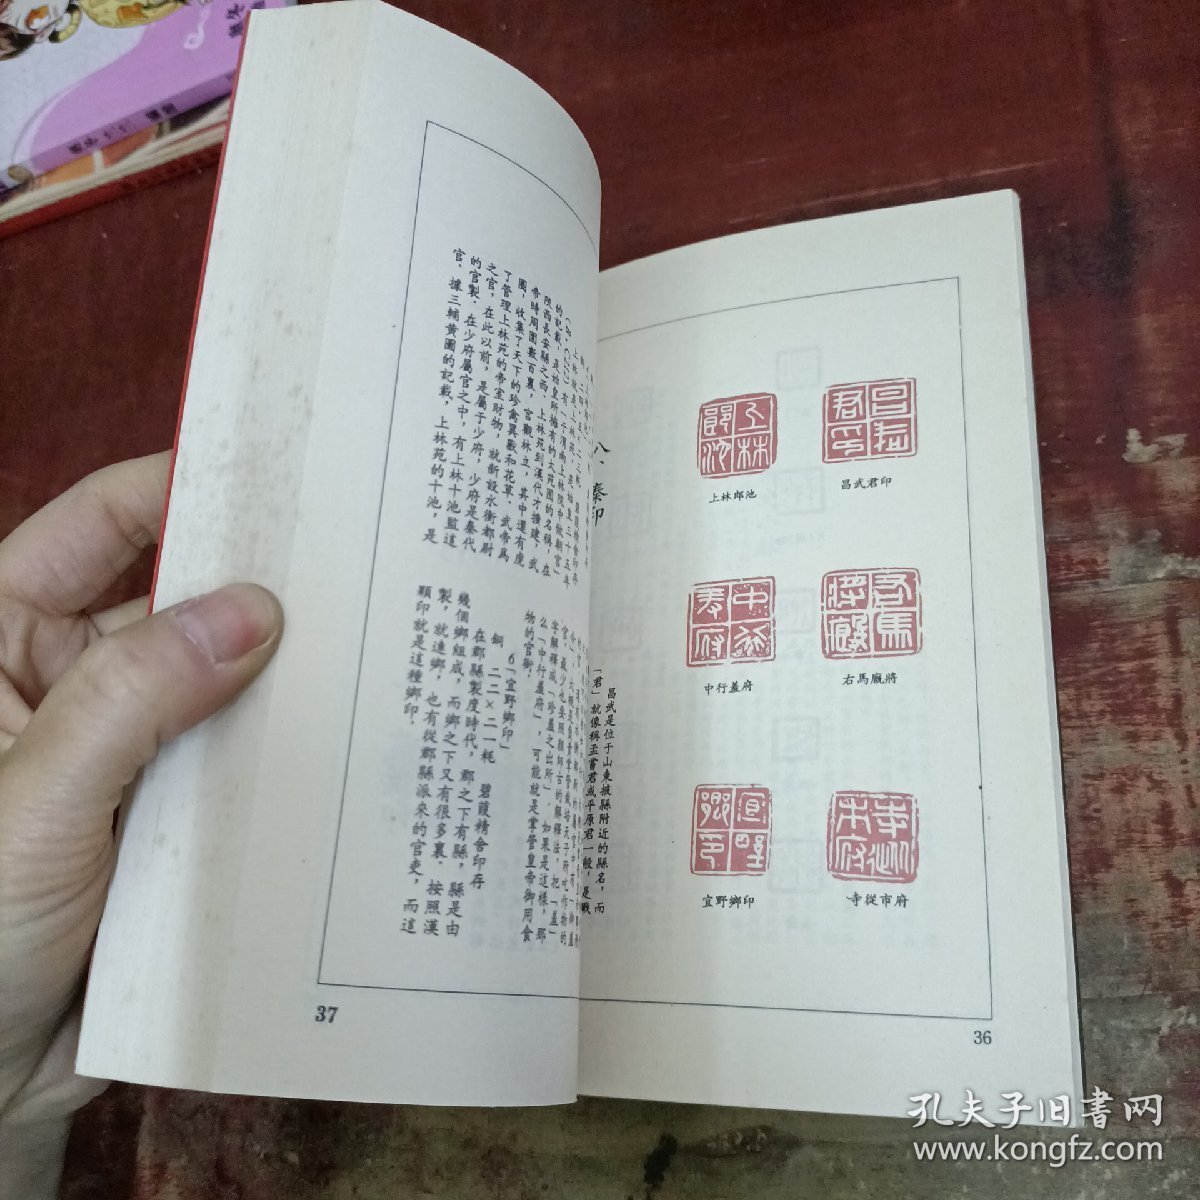 中国印谱 世界图书出版.